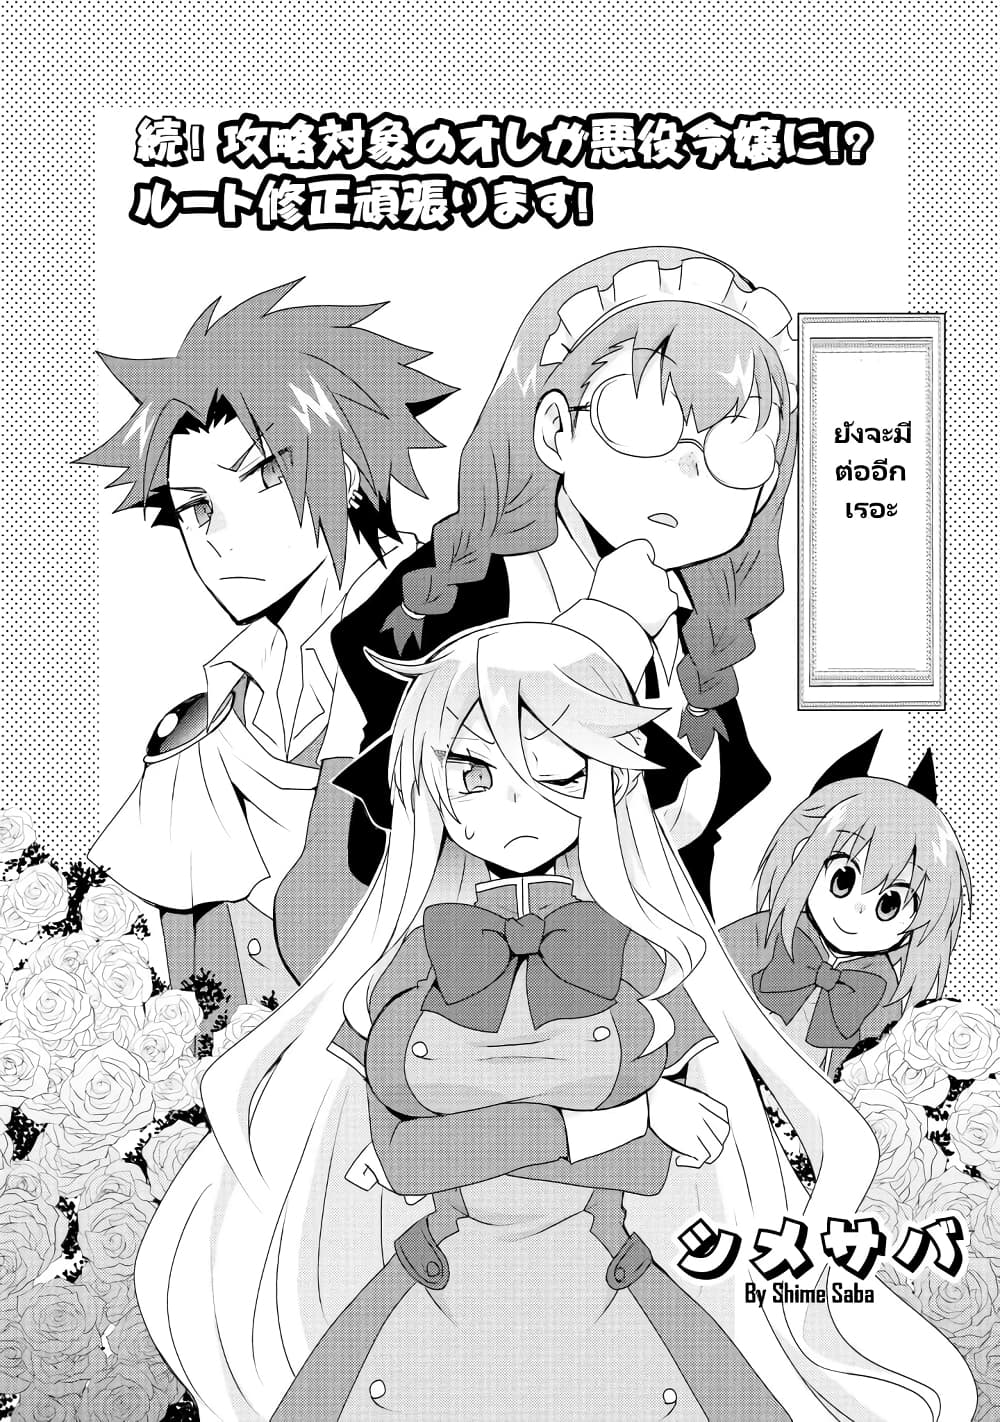 Akuyaku Reijou no Ryuugi, Oshiete Goran ni Iremasu wa! Anthology Comic 2 (3)